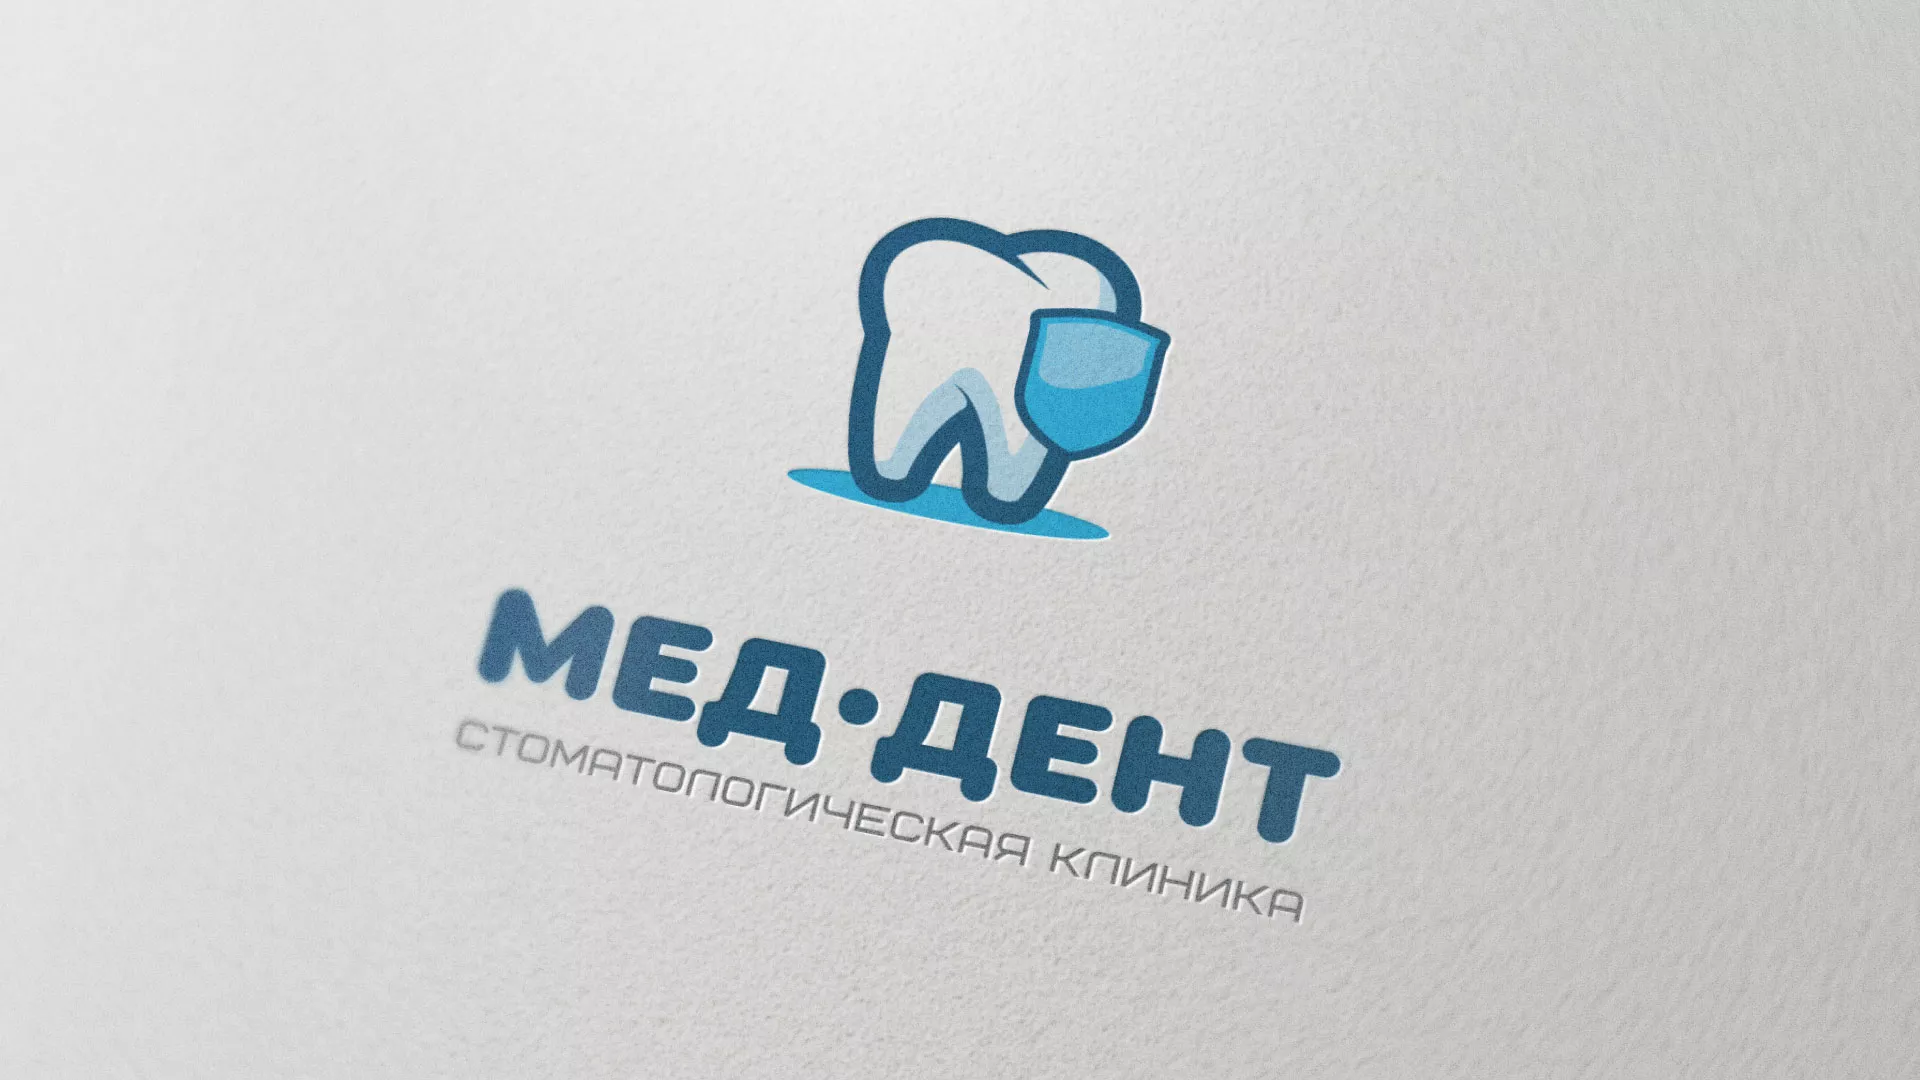 Разработка логотипа стоматологической клиники «МЕД-ДЕНТ» в Усть-Куте